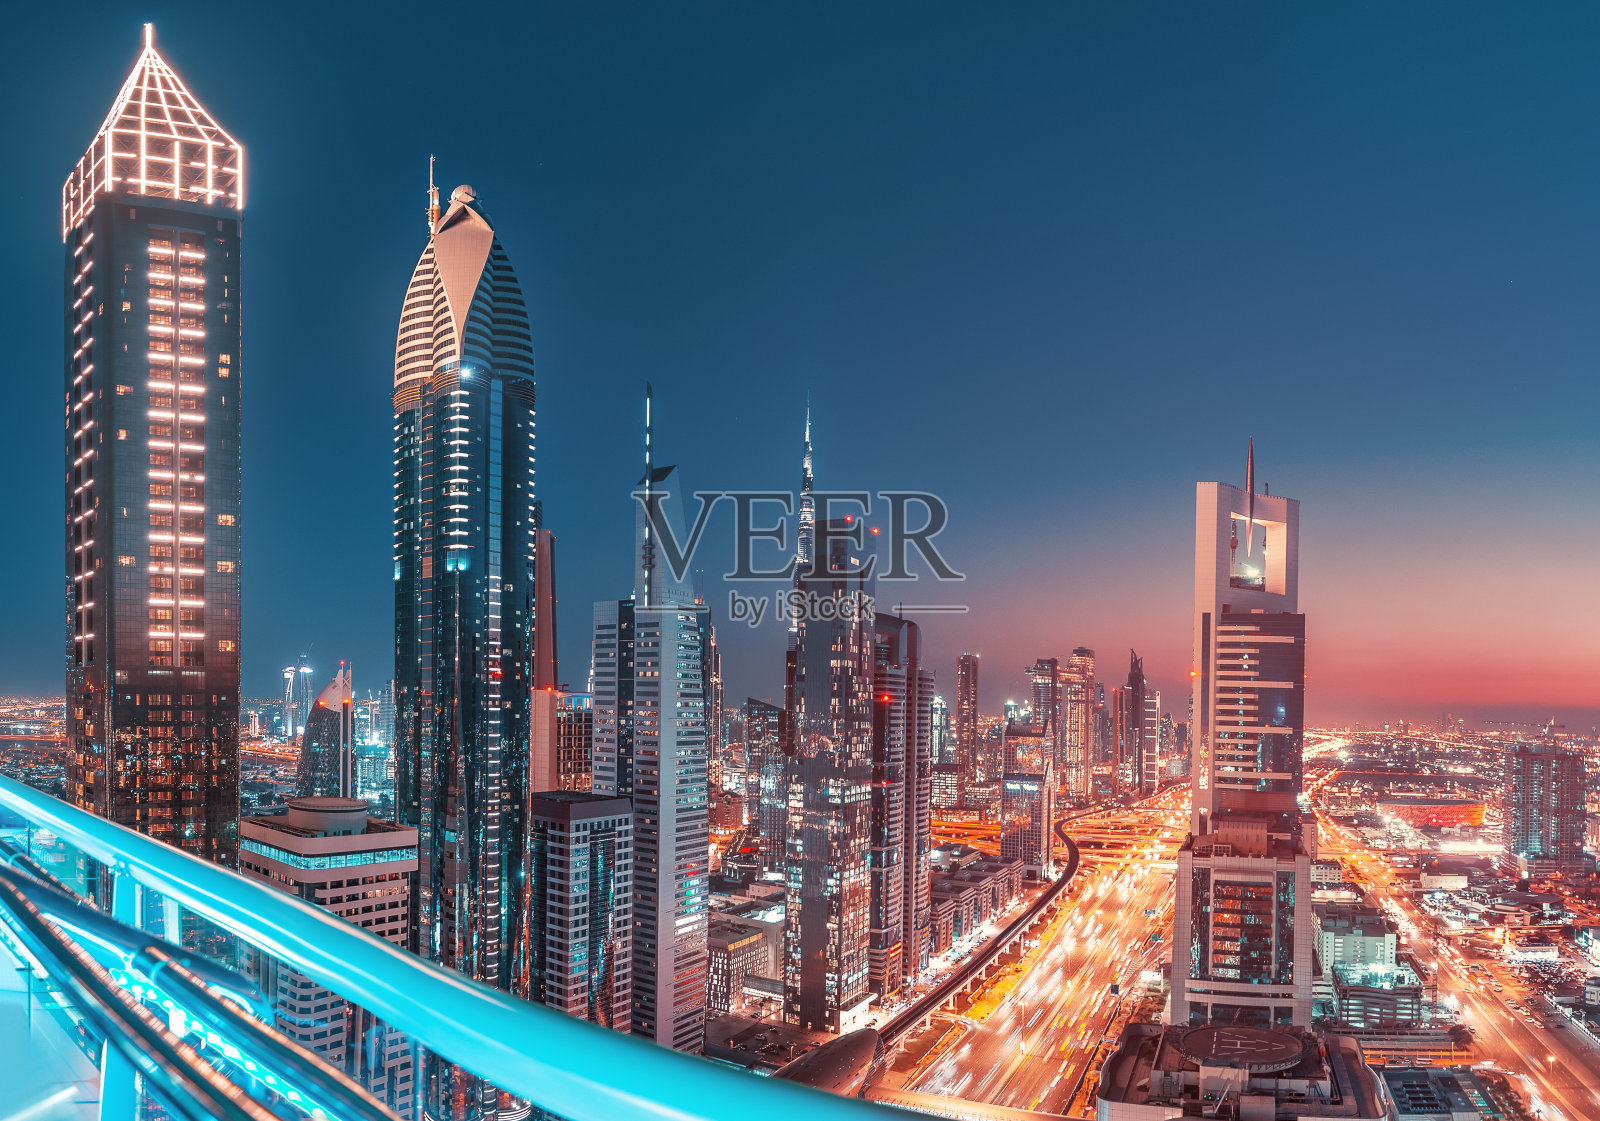 谢赫扎耶德高速公路上高楼大厦林立的迪拜夜景。全球旅游目的地和房地产概念照片摄影图片